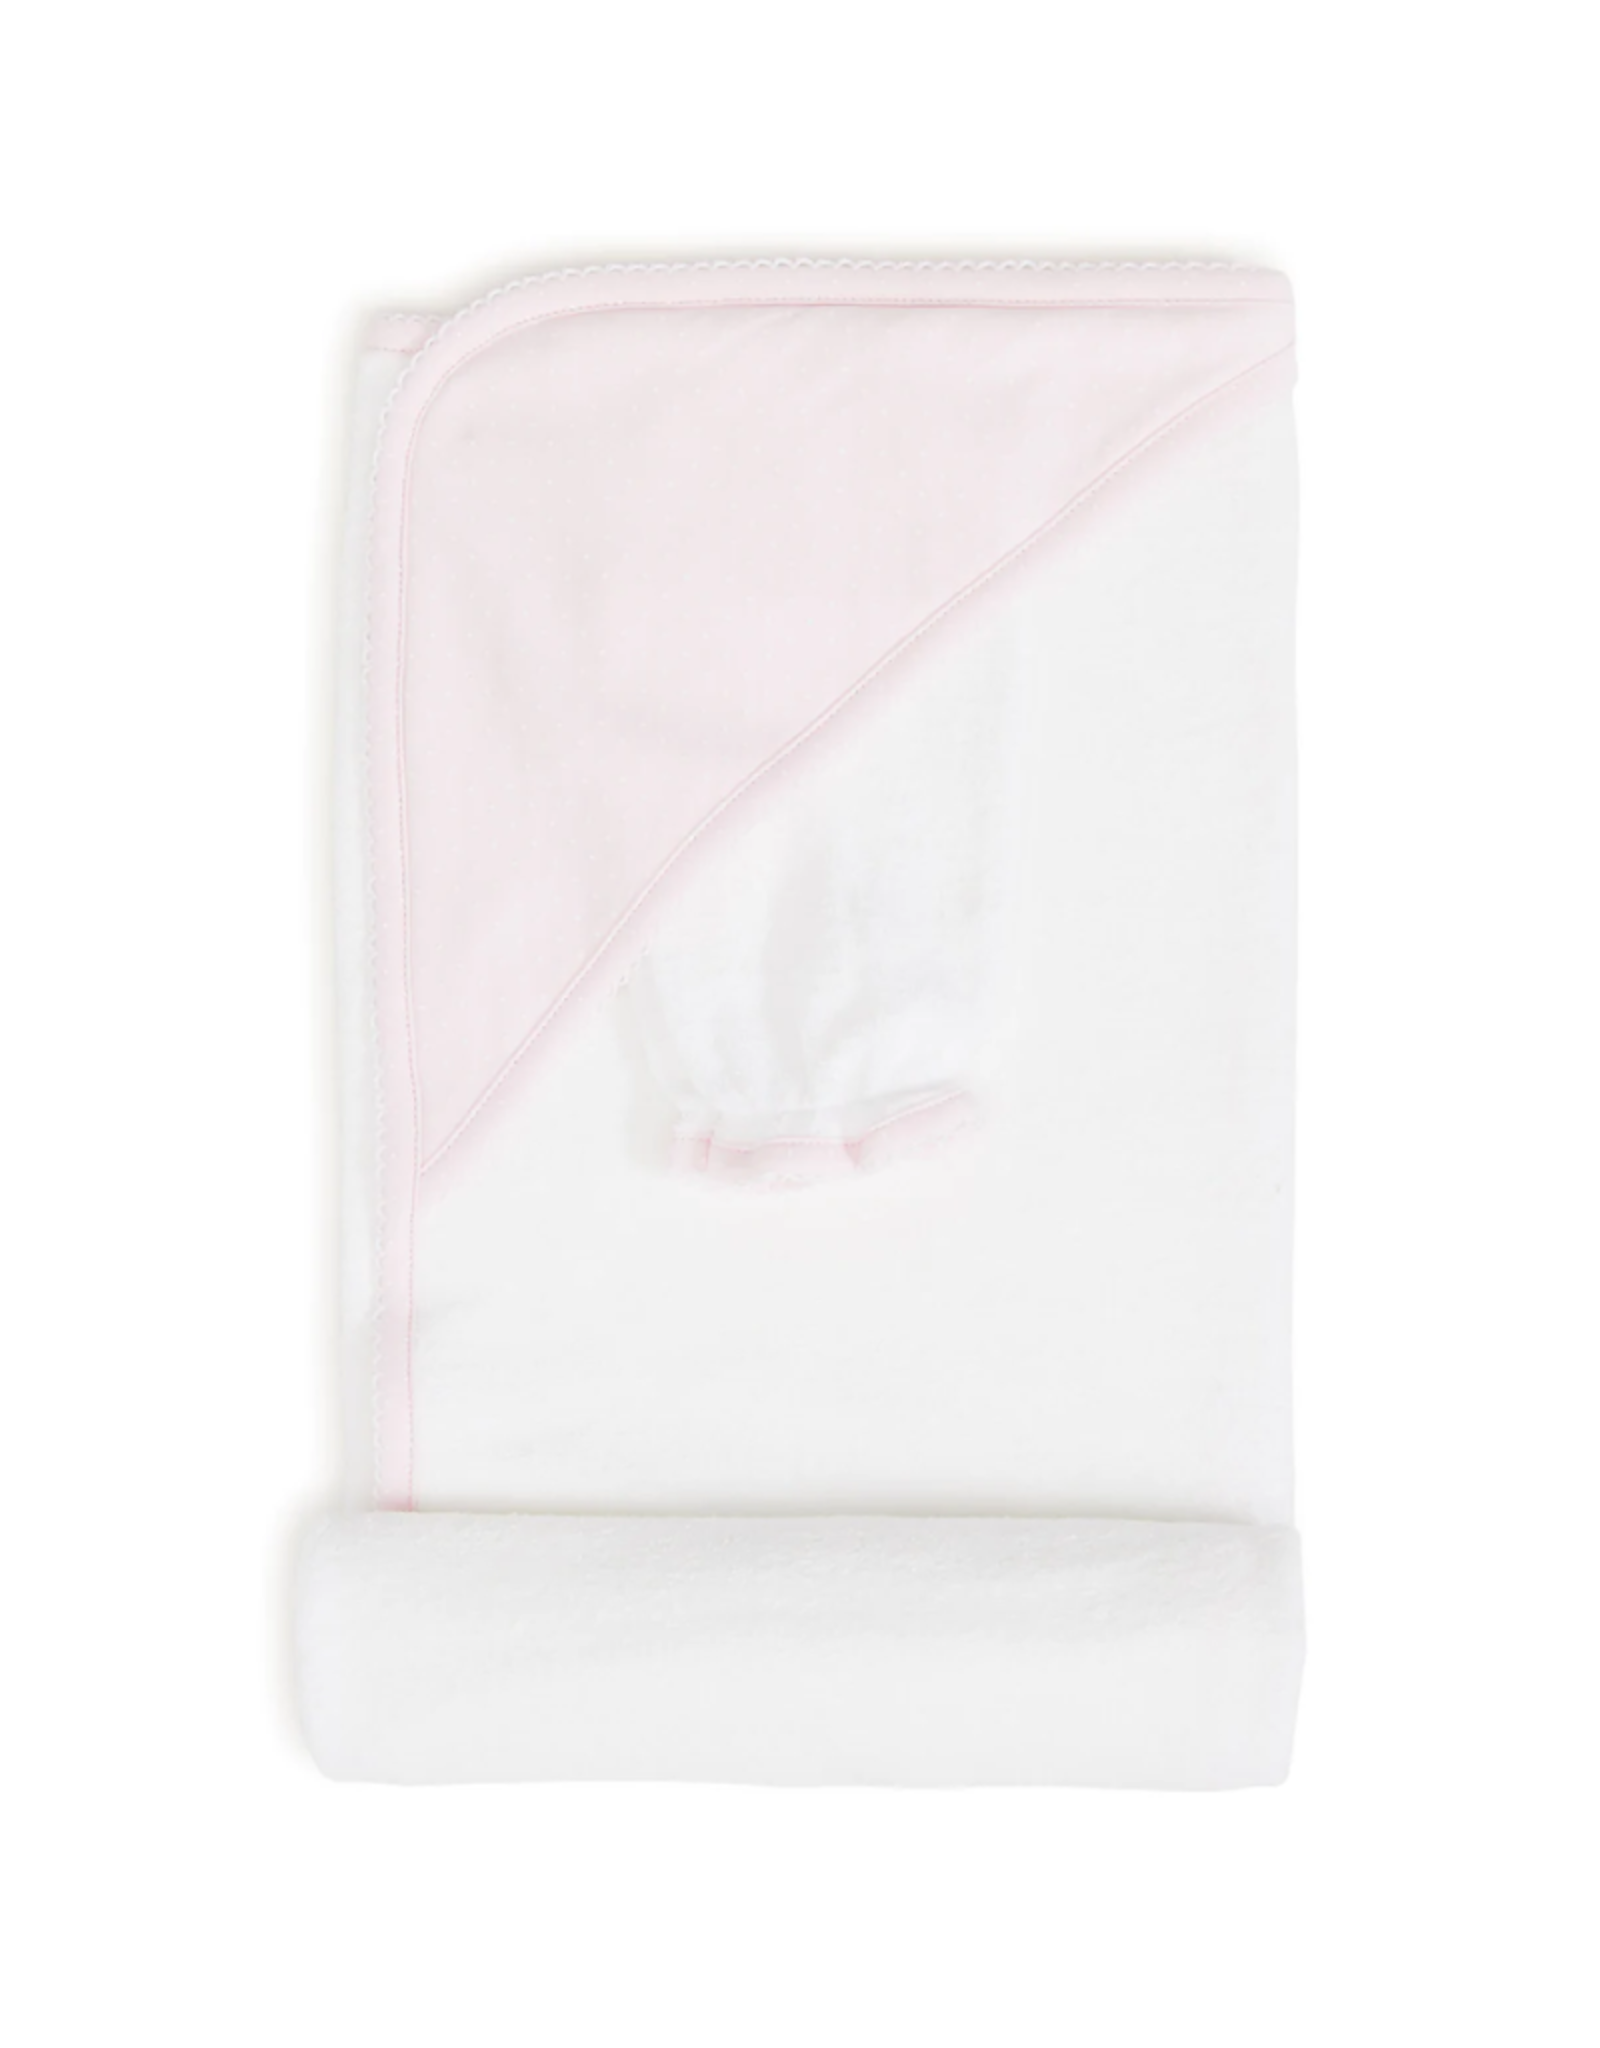 Kissy Kissy New Kissy Dots Towel w/ Mitt, Pink/White